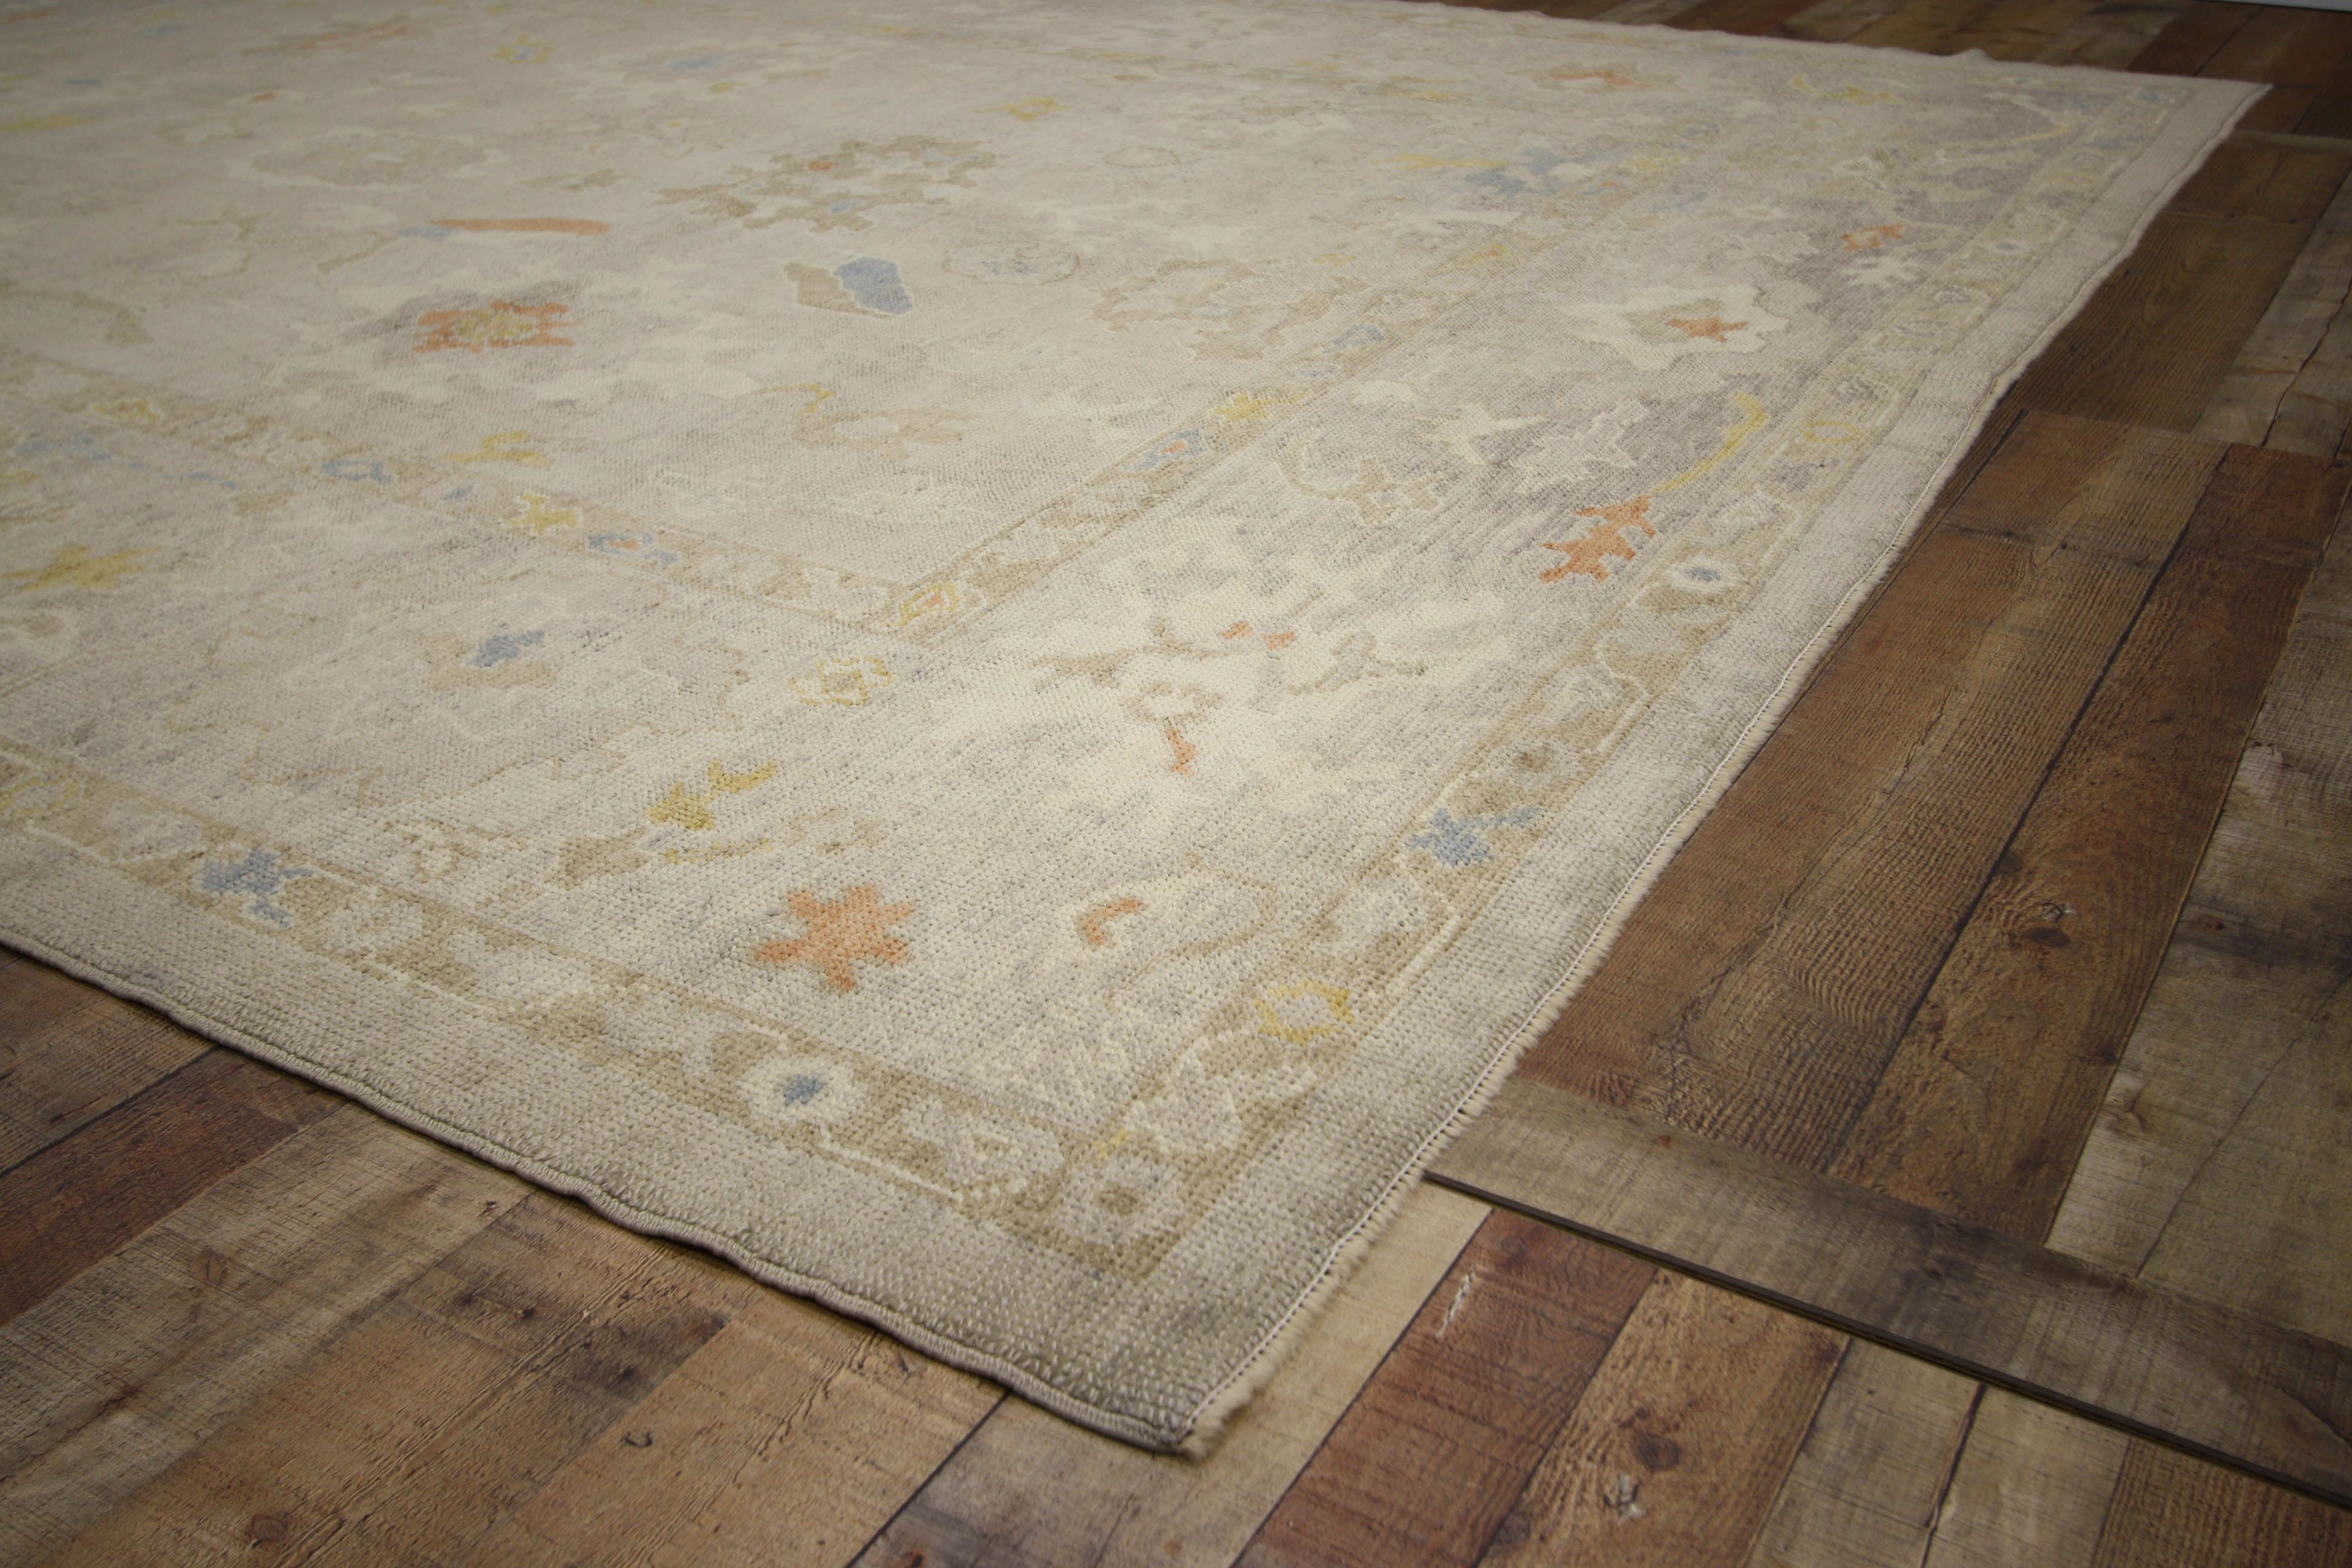 52359, nouveau tapis turc Oushak aux couleurs claires et neutres. Chaleureux et accueillant, ce tapis Oushak turc en laine nouée à la main présente un motif géométrique à grande échelle composé de palmettes et de formes abstraites sur un fond gris